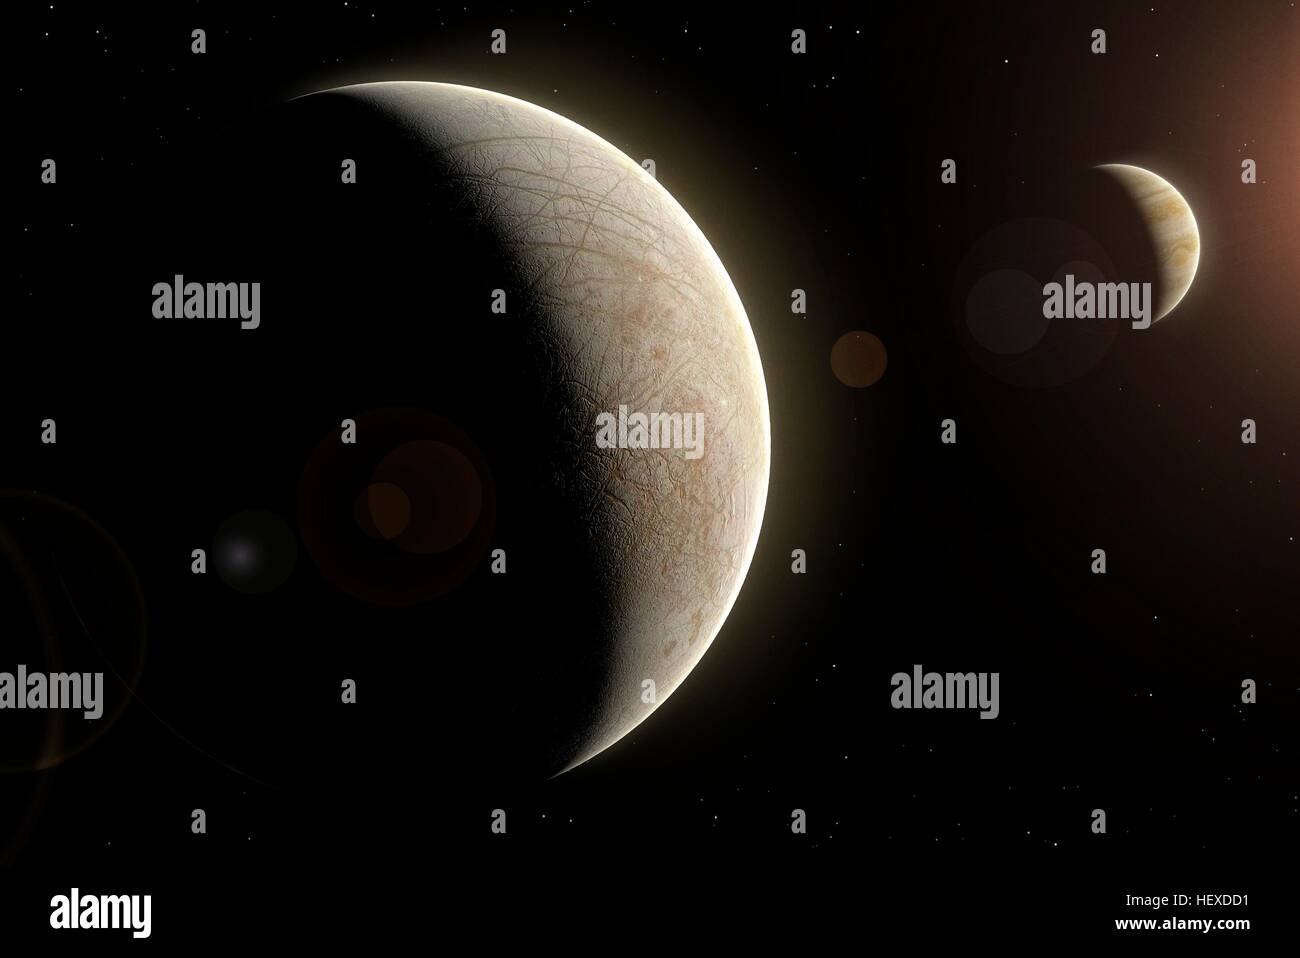 Europa est l'une des quatre lunes galiléennes de Jupiter, la deuxième plus éloigné l'un de la planète. Sa surface est une coquille craquelée de glace d'eau avec très peu de cratères d'impact. Probablement il y a de l'eau liquide en dessous. Jupiter est également affichée en arrière-plan dans cette scène. Banque D'Images